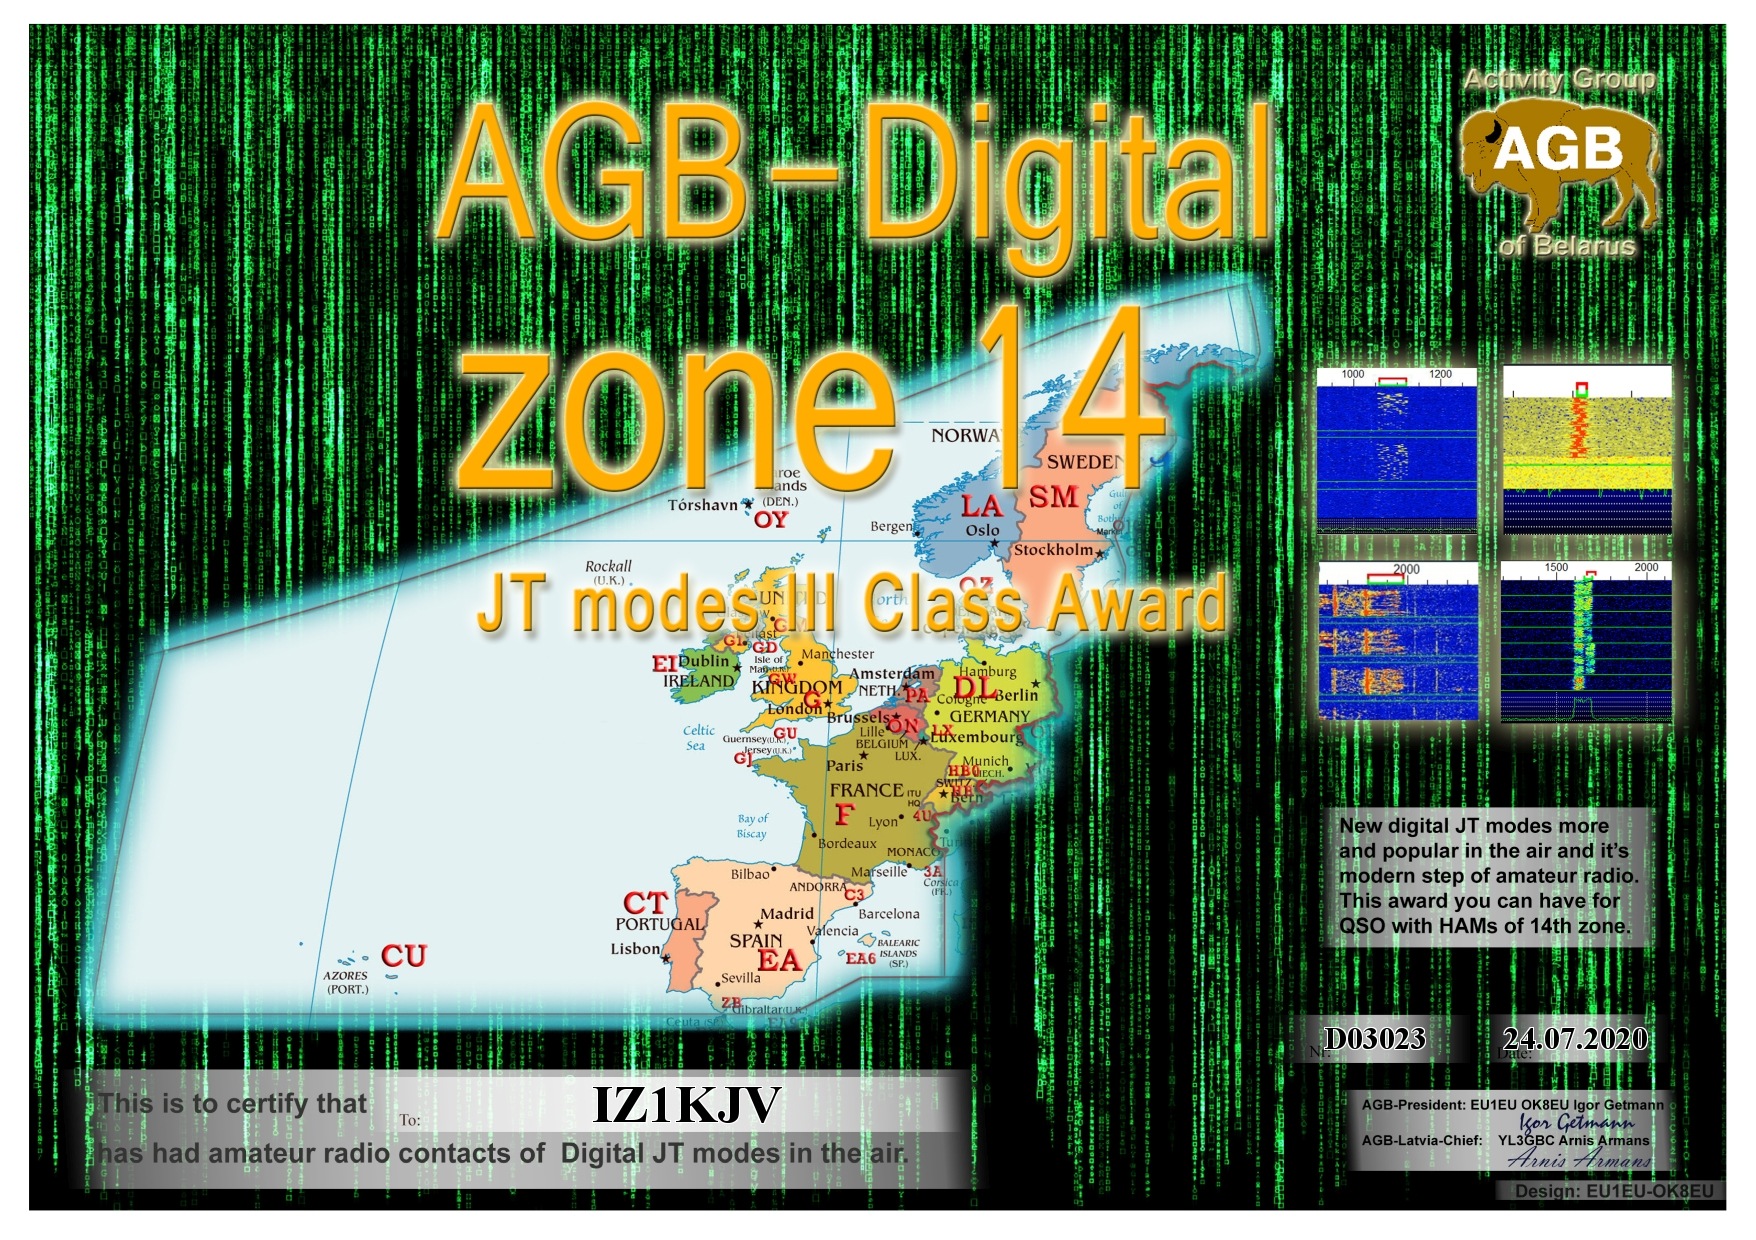 IZ1KJV-ZONE14_BASIC-III_AGB